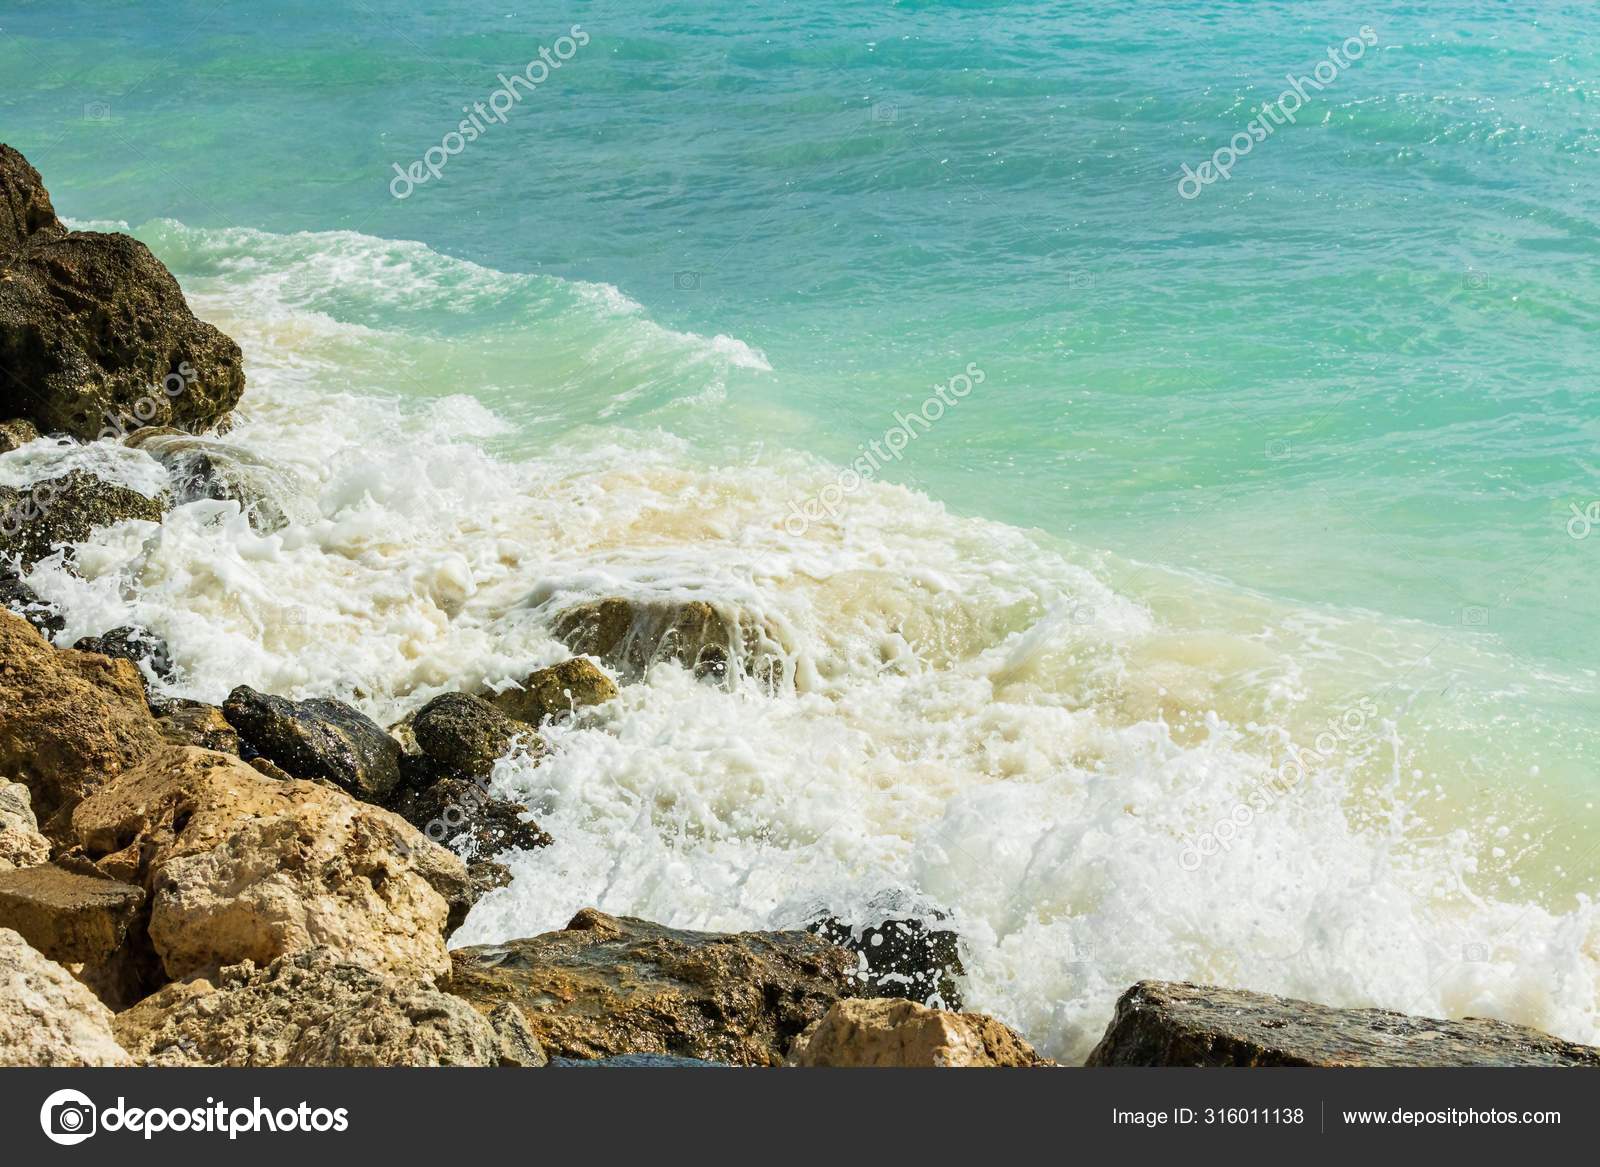 大西洋沿岸的岩石线华丽的白色泡沫波浪和碧绿的水美丽的自然景观背景 图库照片 C Mulevich